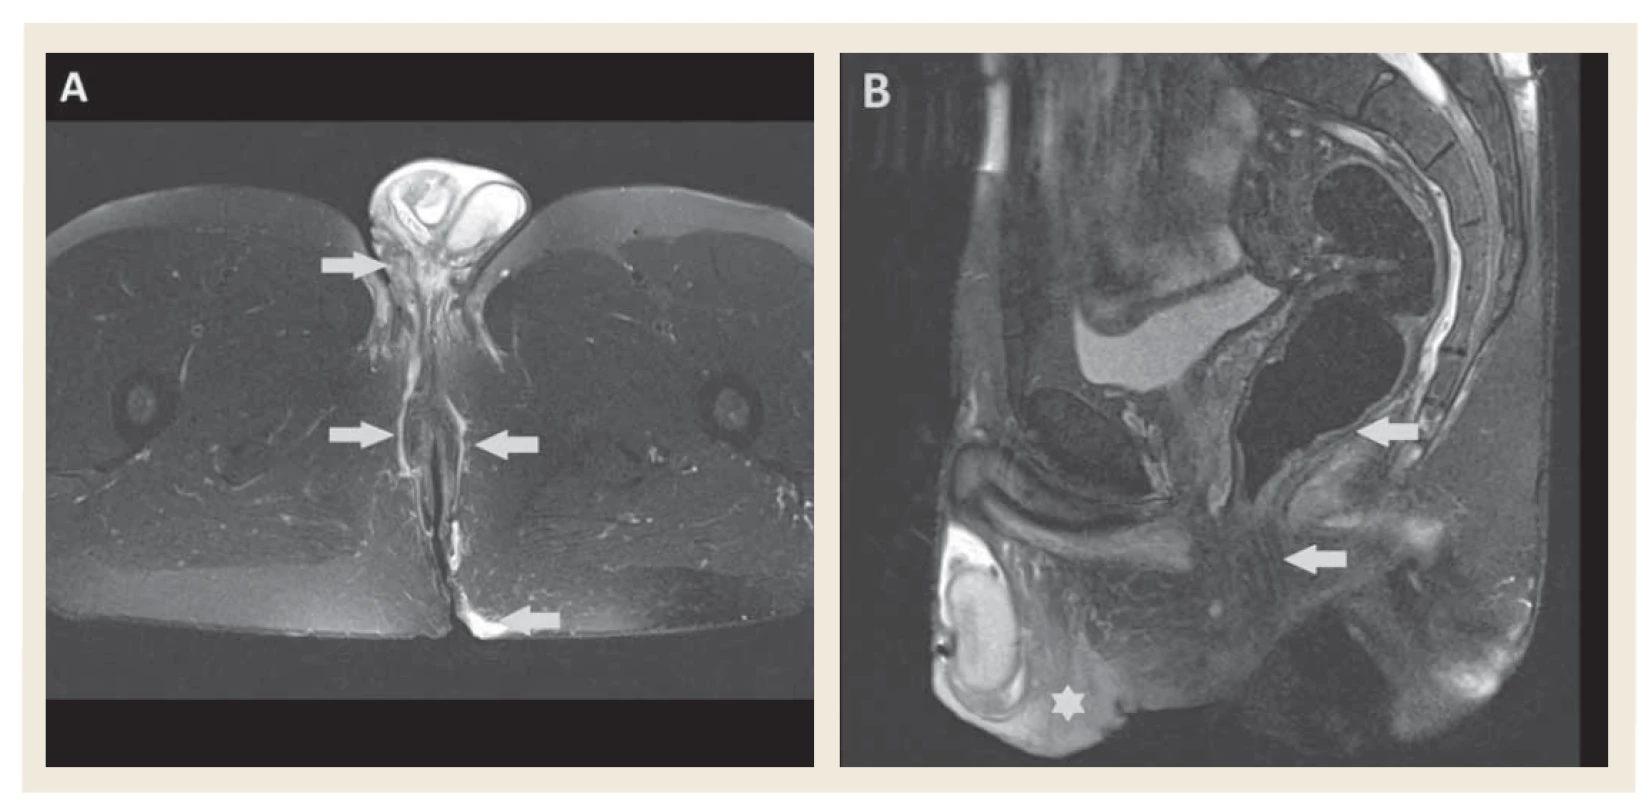 MR vyšetrenie, T2 váženie s potlačením signálu tuku – A) transverzálny rez, zobrazujú sa obojstranné fistuly v oblasti
perinea zasahujúce ventrálne na skrotum a dorzálne do gluteálnej oblasti (šípky). B) sagitálny rez, viditeľný edém
skróta a perinea (hviezdička), análne sfinktre intaktné, stena rekta bez zhrubnutia (šípky).<br>
Fig. 4. MR imaging, fat suppressed T2 image – A) axial view, bilateral fistulae in perineal region extending to scrotum and to
gluteal region (arrows). B) sagittal view, scrotal and perineal oedema (star), anal sphincters are not affected, rectal wall
without thickening (arrows).